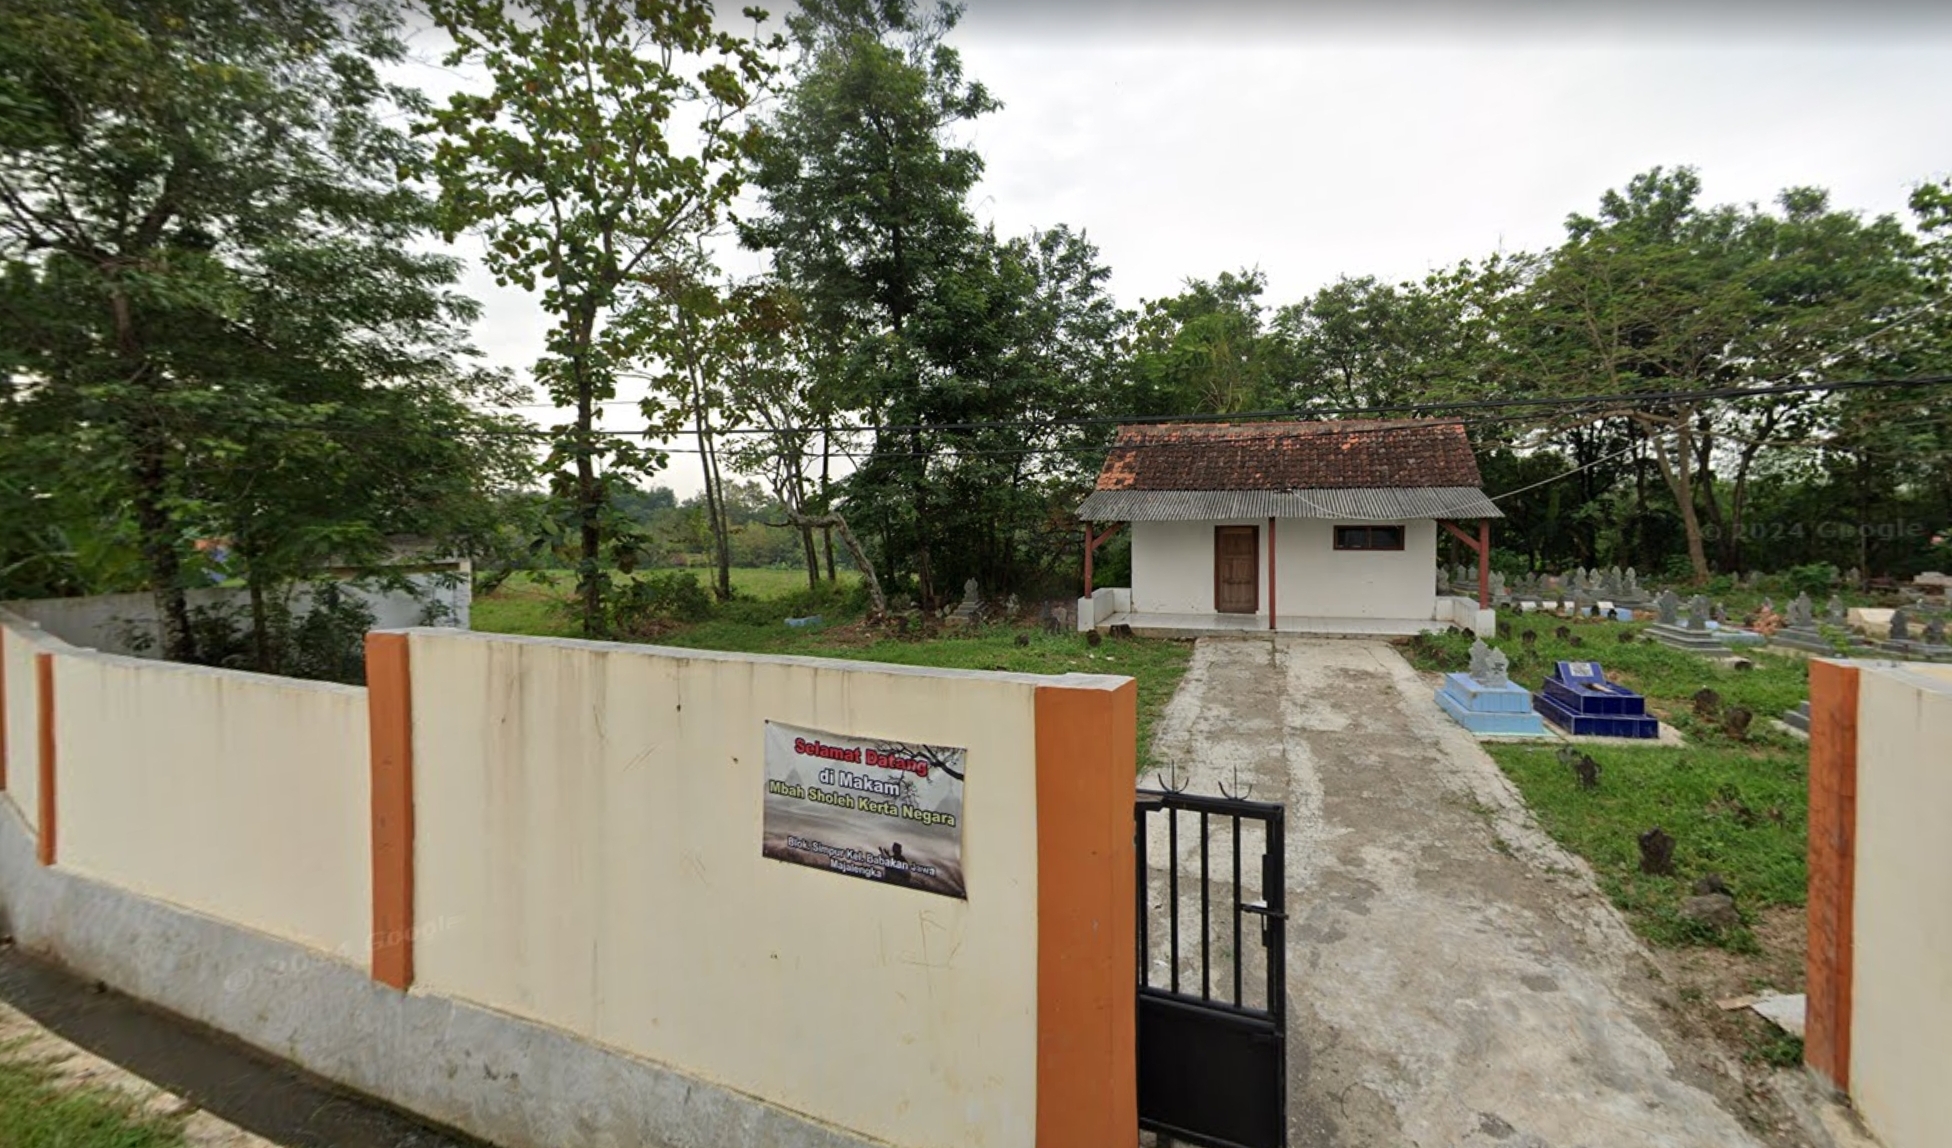 Jejak Prajurit Mataram di Majalengka, Berada di Makam Keramat Simpur, Keturunannya Dirikan Pesantren